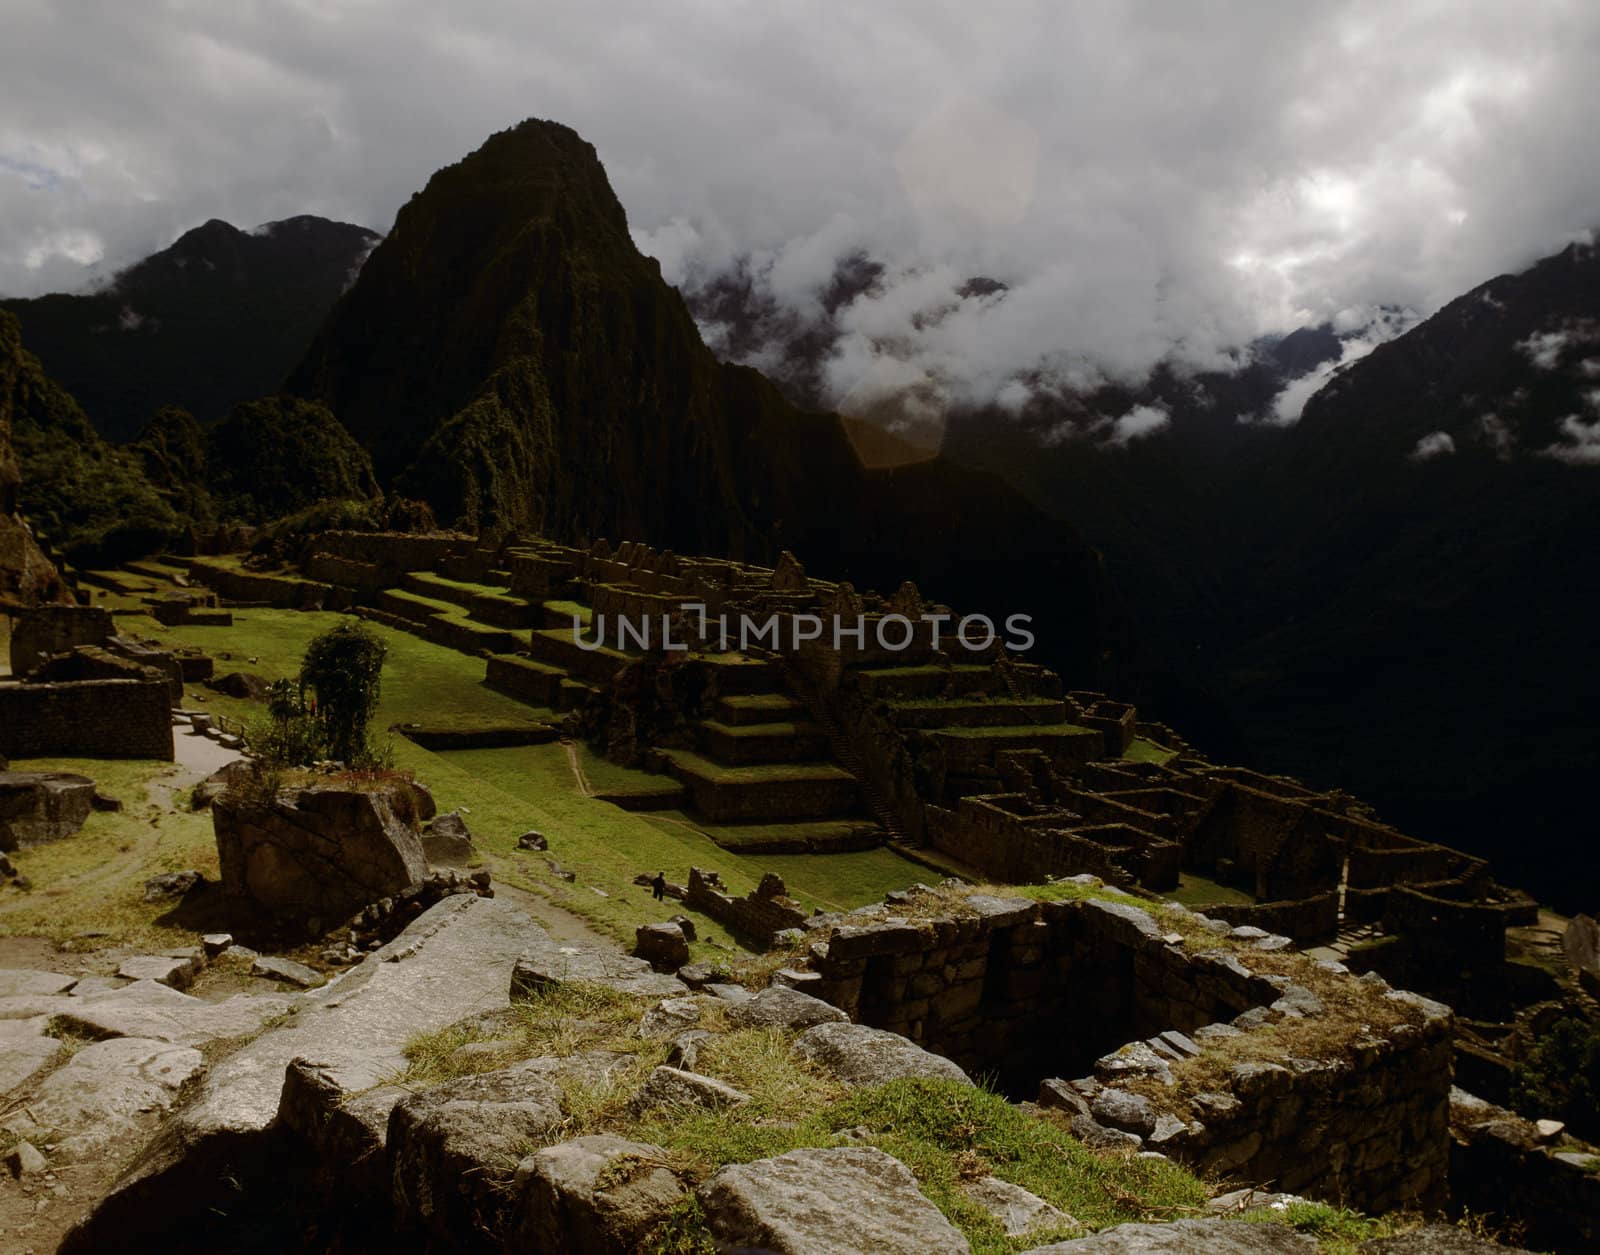 Machu Picchu Ruins in Peru by RUSSELLIMAGES